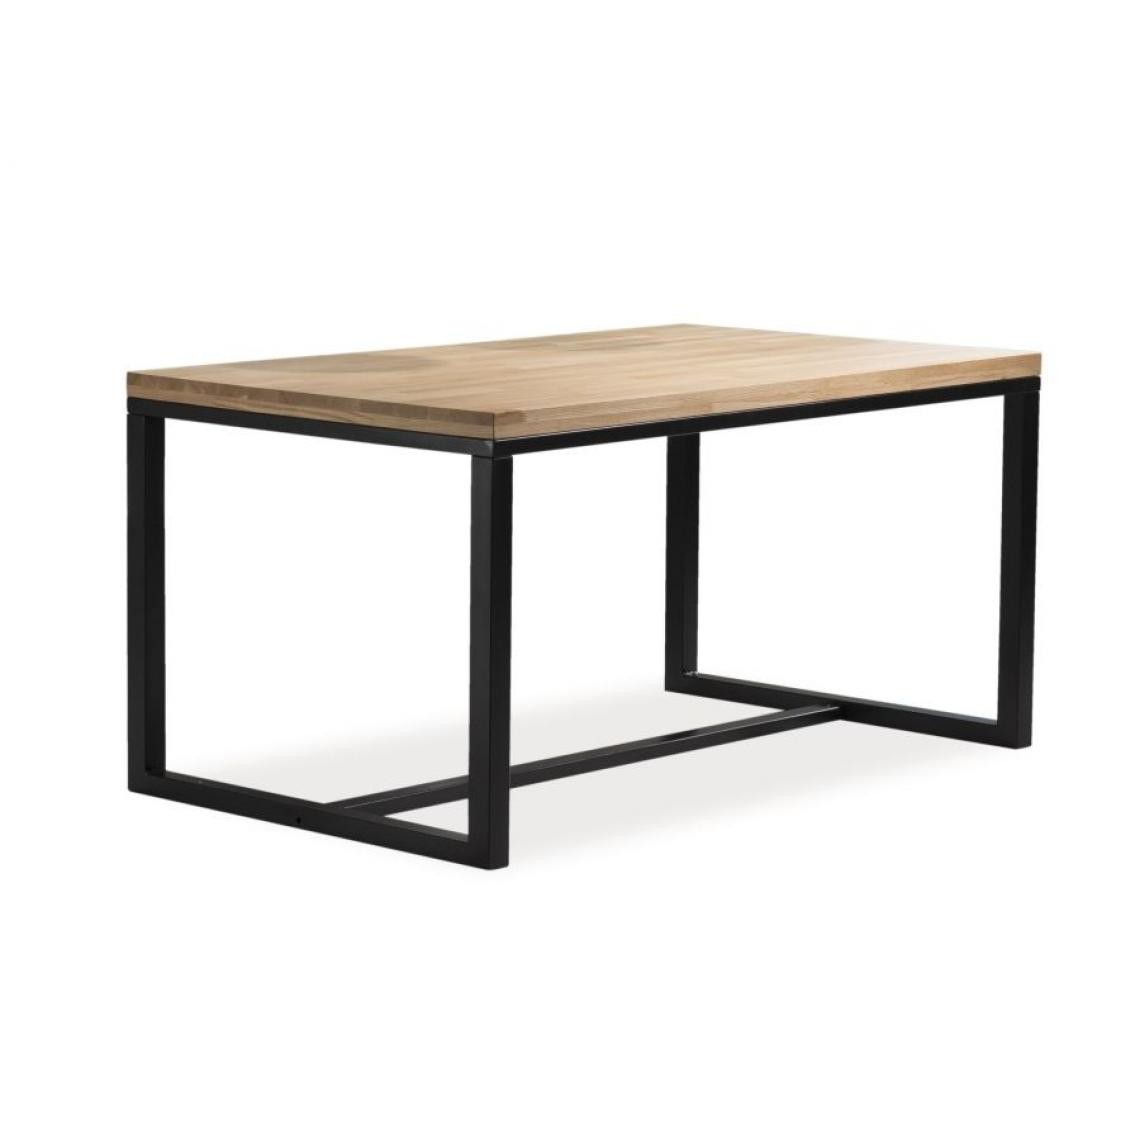 Hucoco - LORAT - Table en bois avec piètement en métal - 120x80x78 cm - Plateau en bois - Piètement métal - Style loft - Chêne - Tables à manger